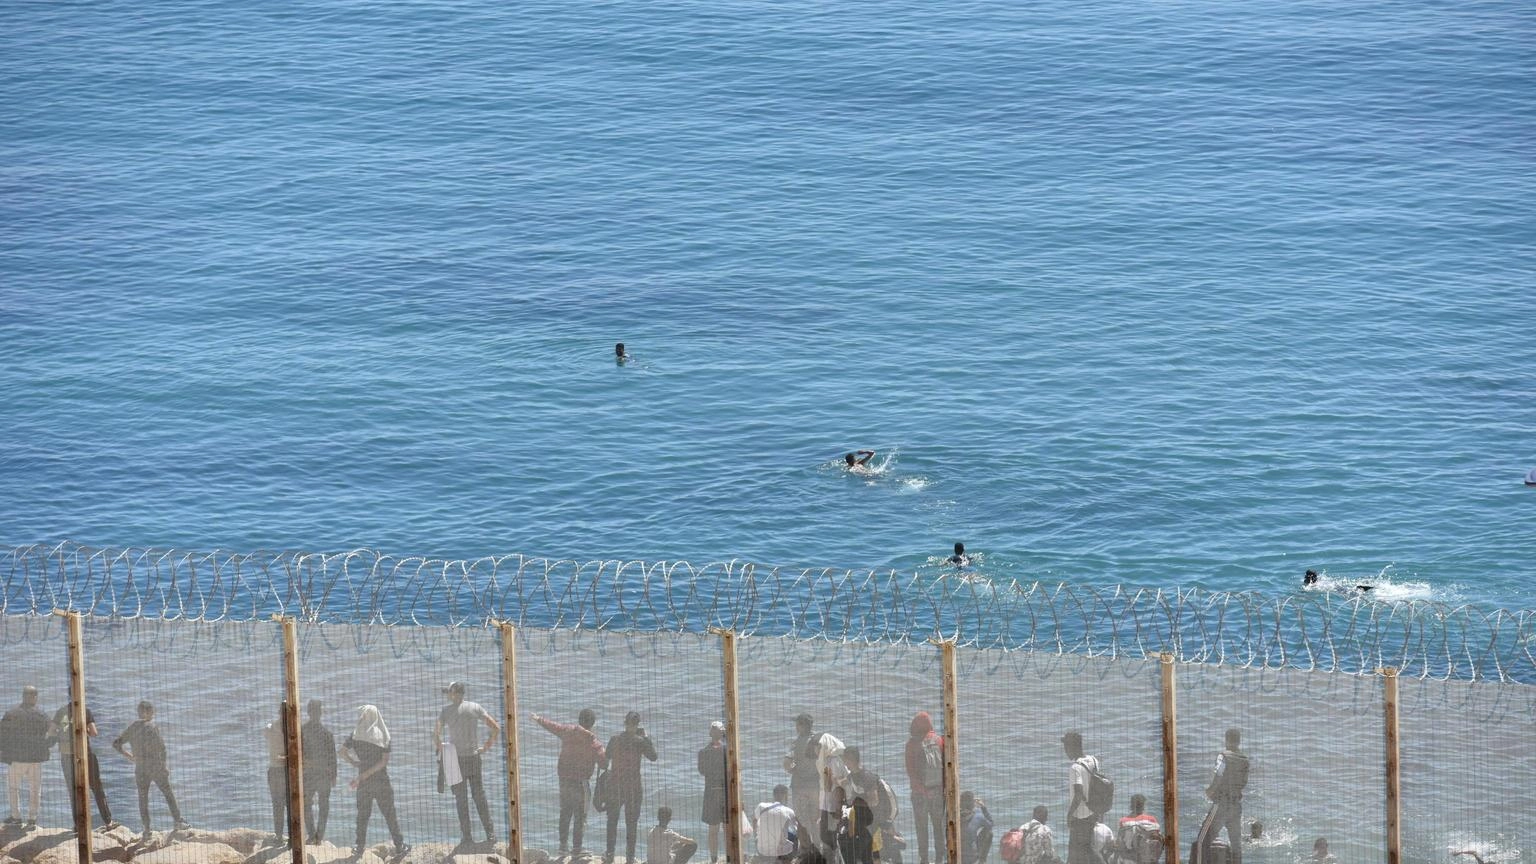 Arrivi a nuoto dei migranti minori a Ceuta aumentati del 550%